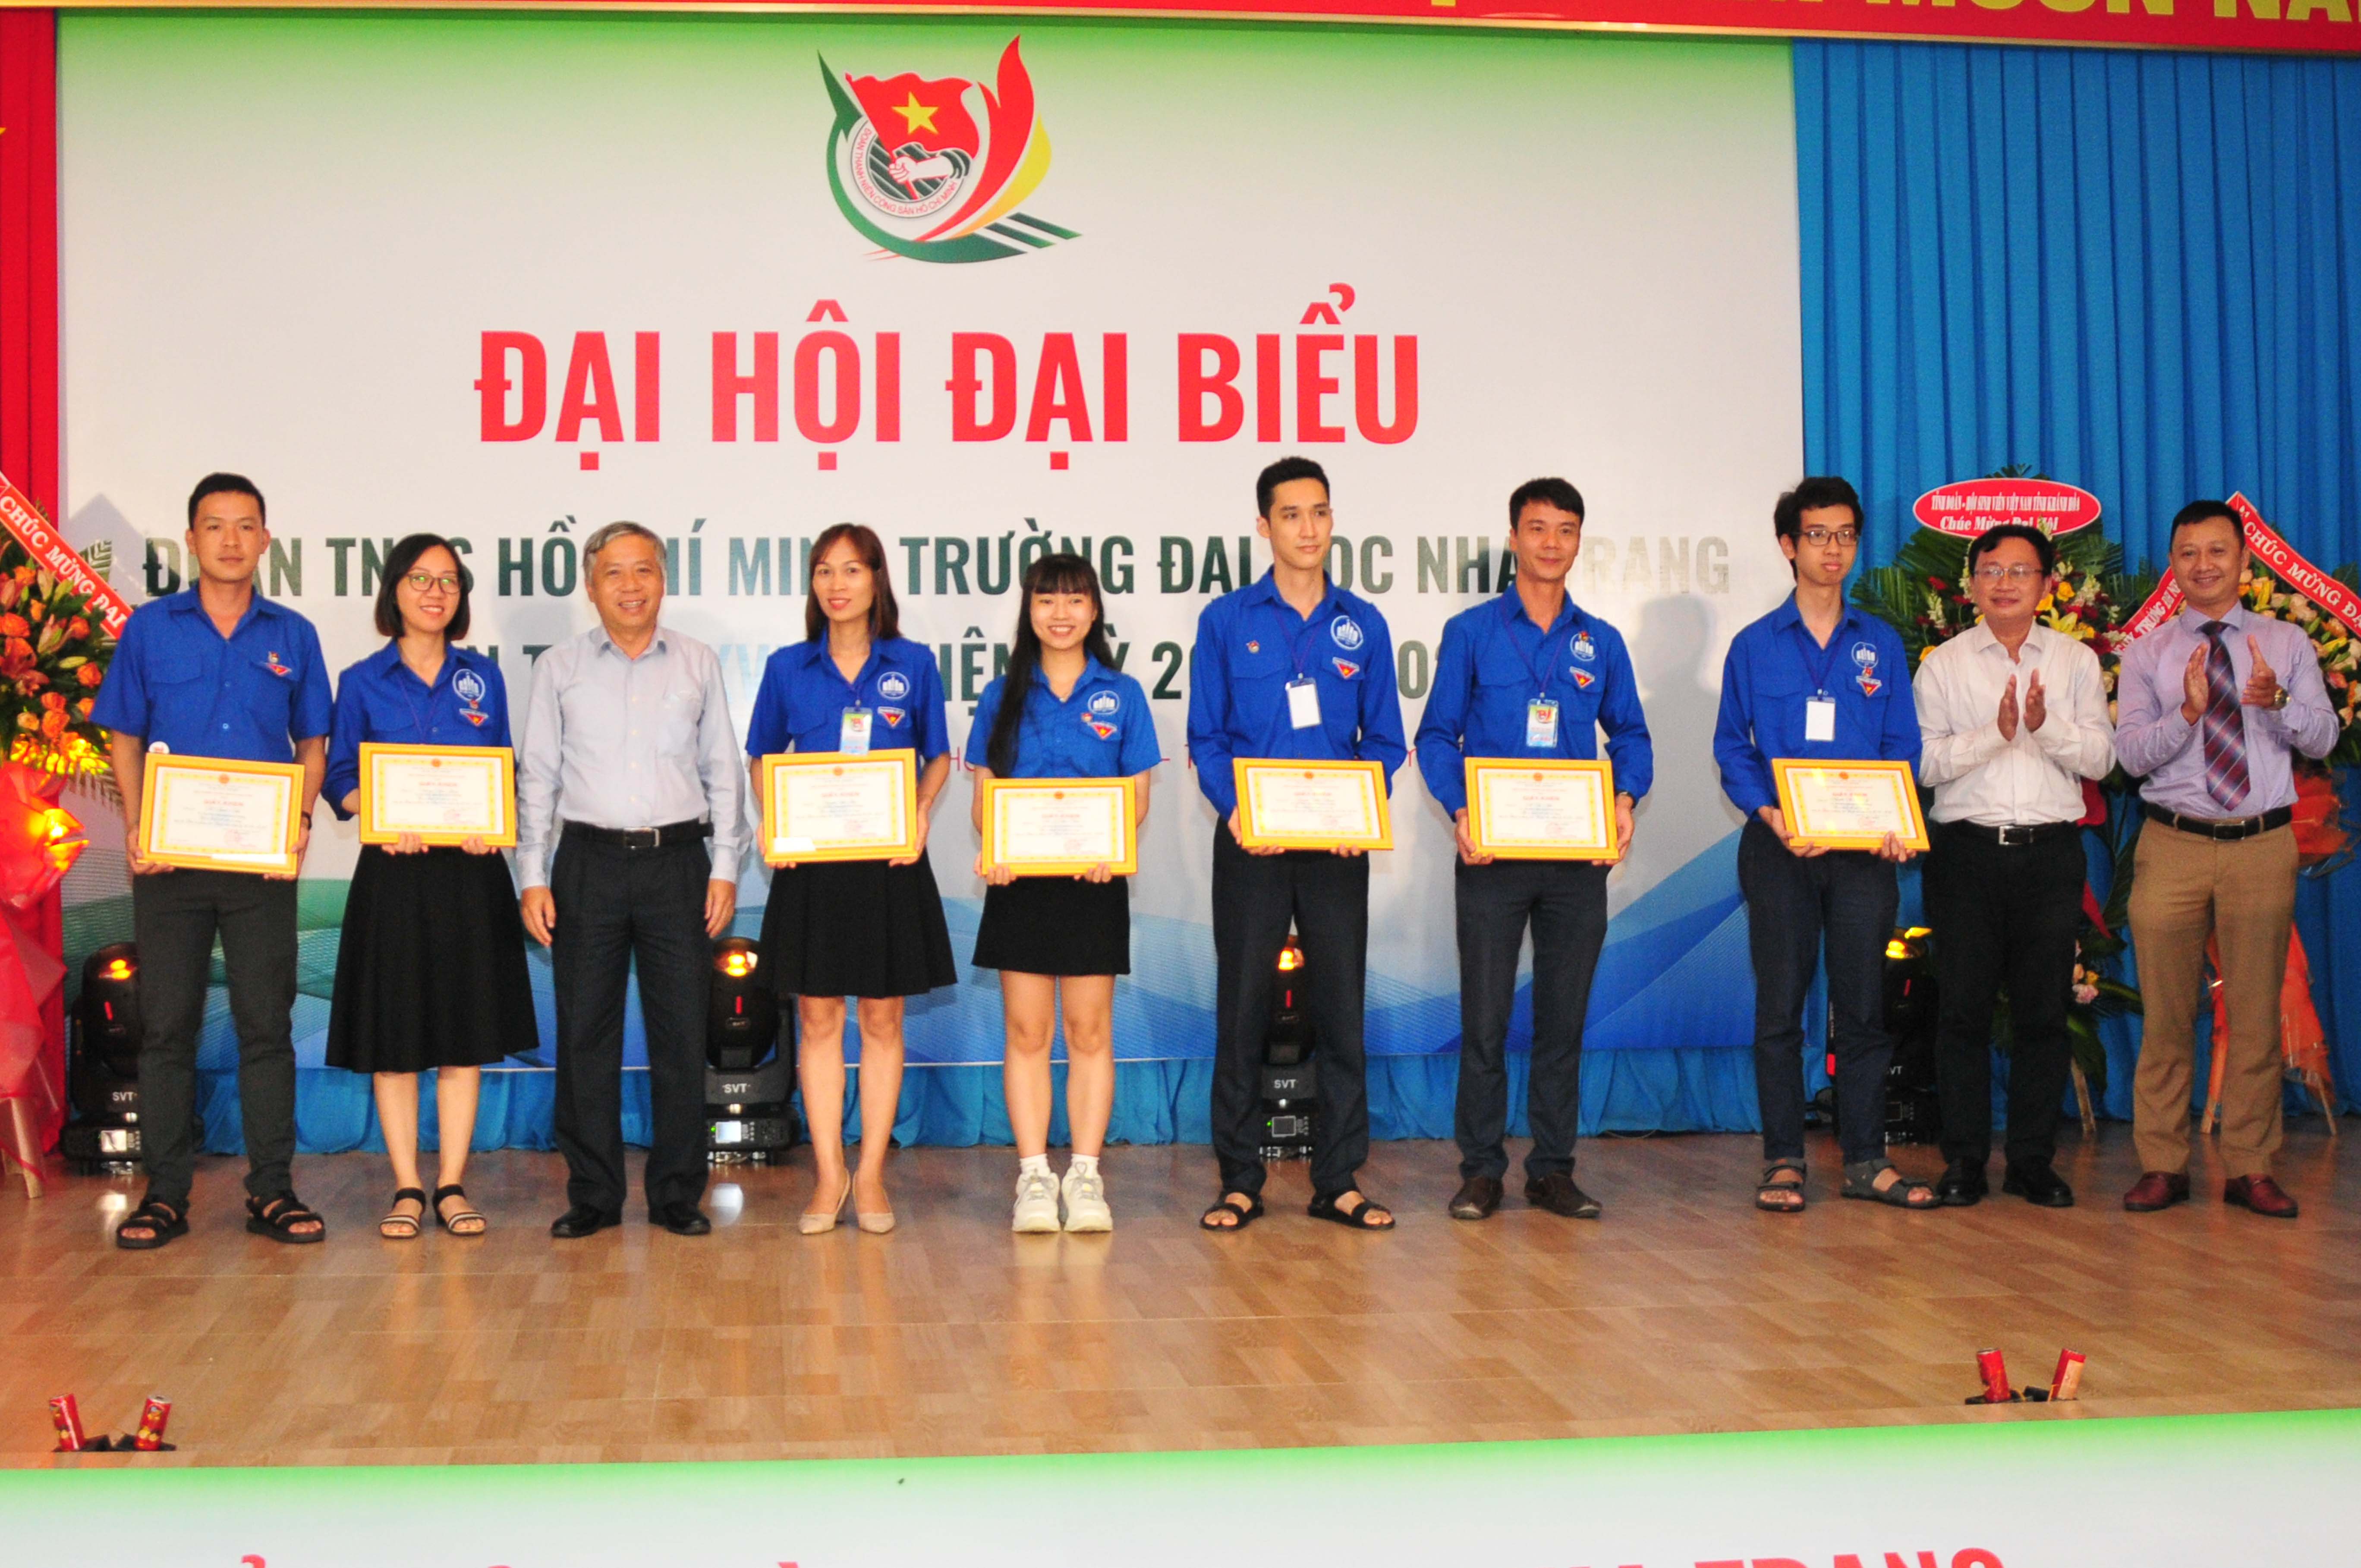 Lãnh đạo Trường Đại học Nha Trang khen thưởng các cá nhân có thành tích trong công tác Đoàn và phong trào thanh thiếu niên nhiệm kỳ 2019 - 2022